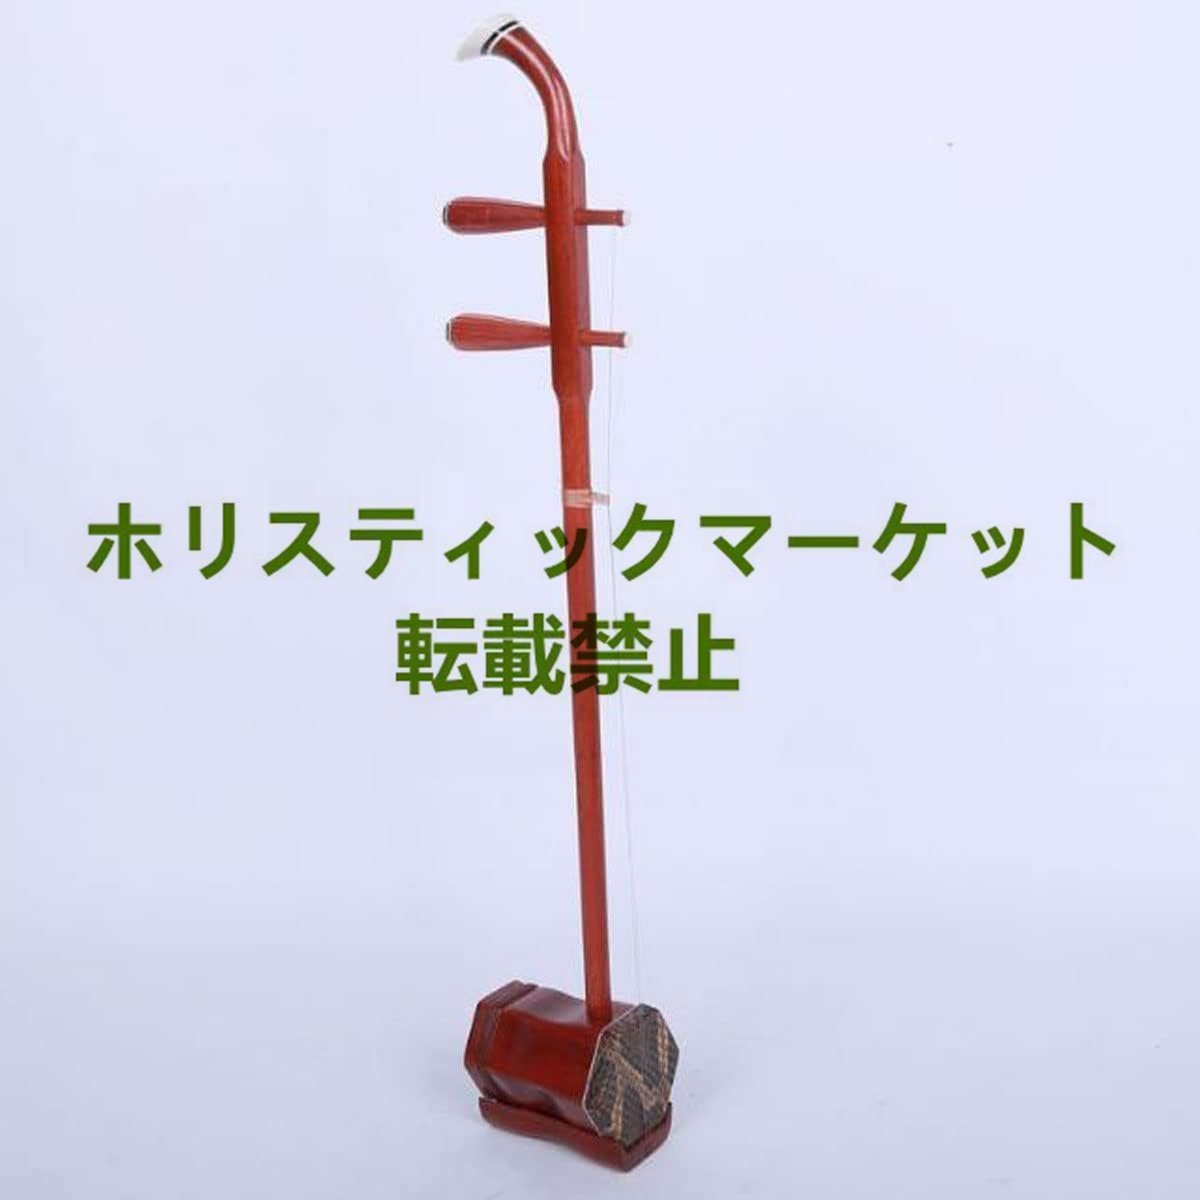  прекрасный товар * высокое качество *.. 2 .. дерево China музыкальные инструменты 2 . kokyu не использовался полужесткий чехол комплект 